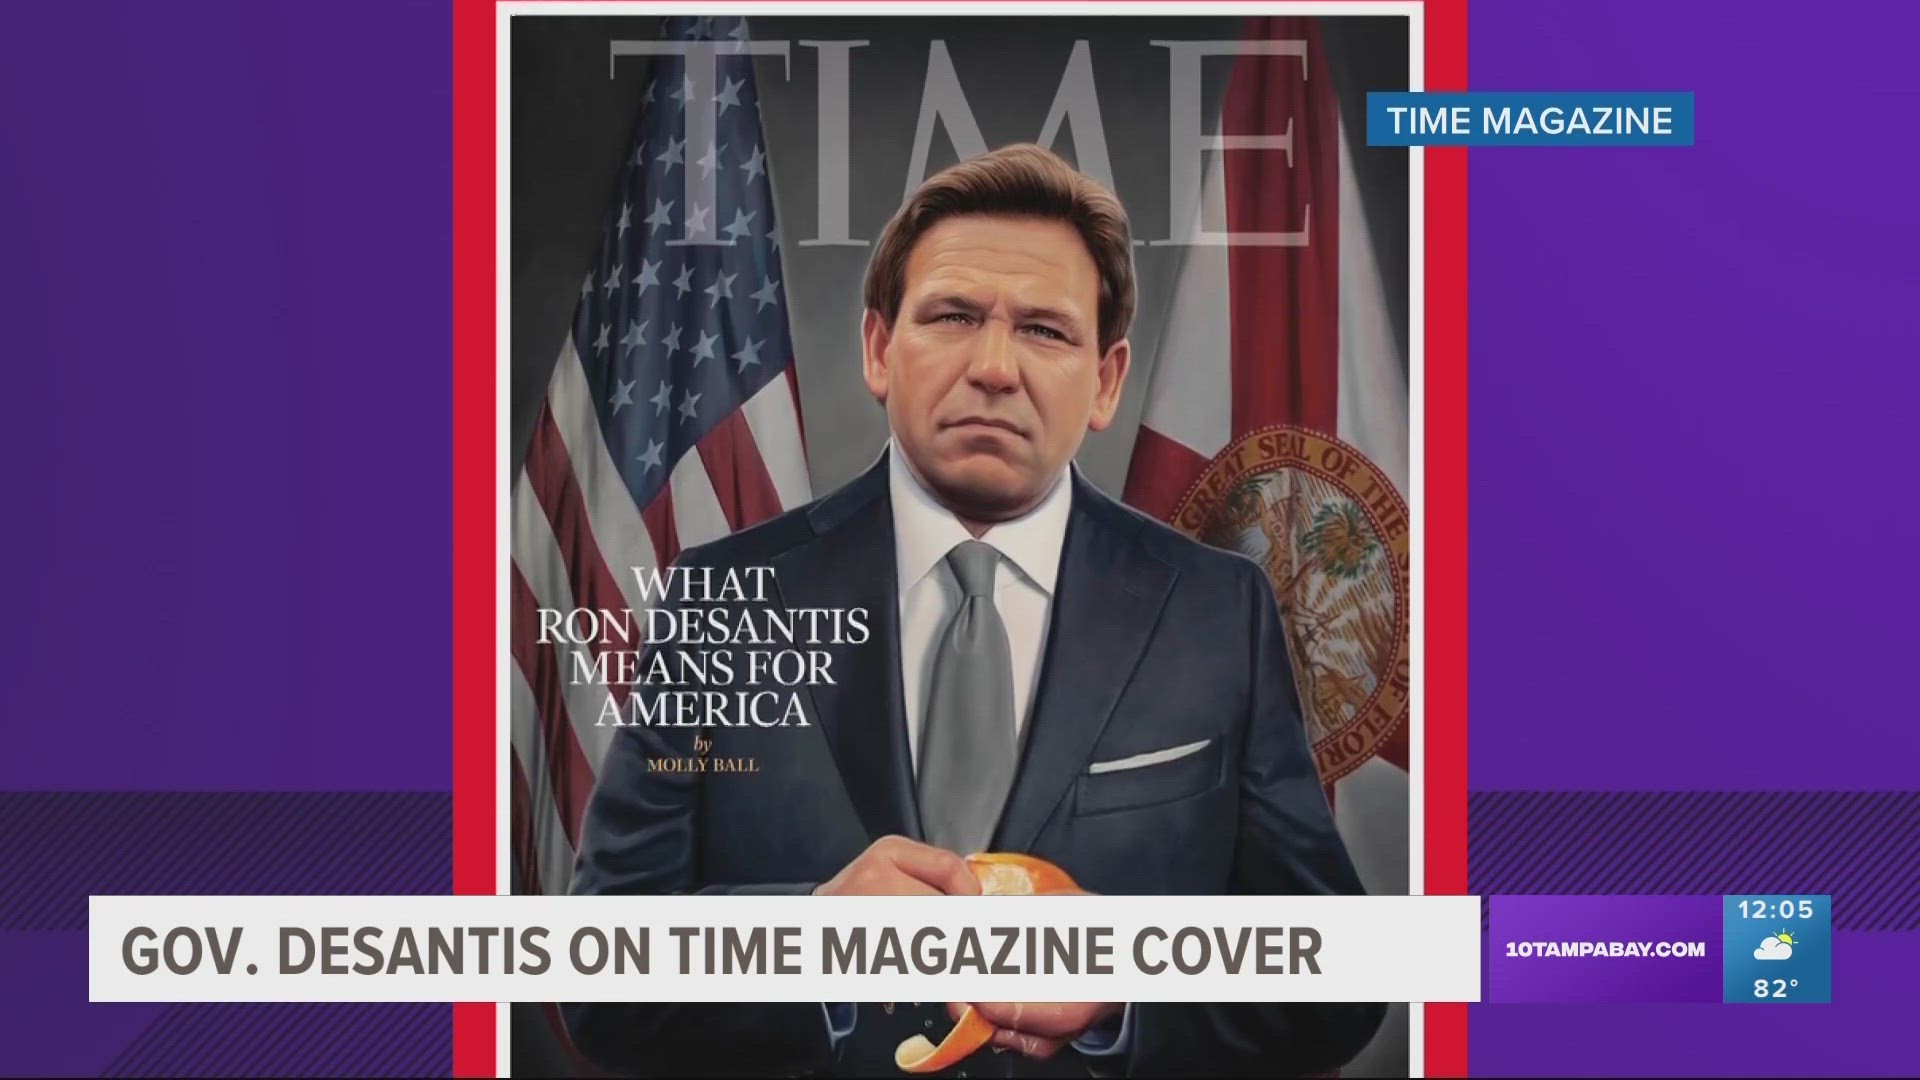 Gov. DeSantis featured Time magazine cover